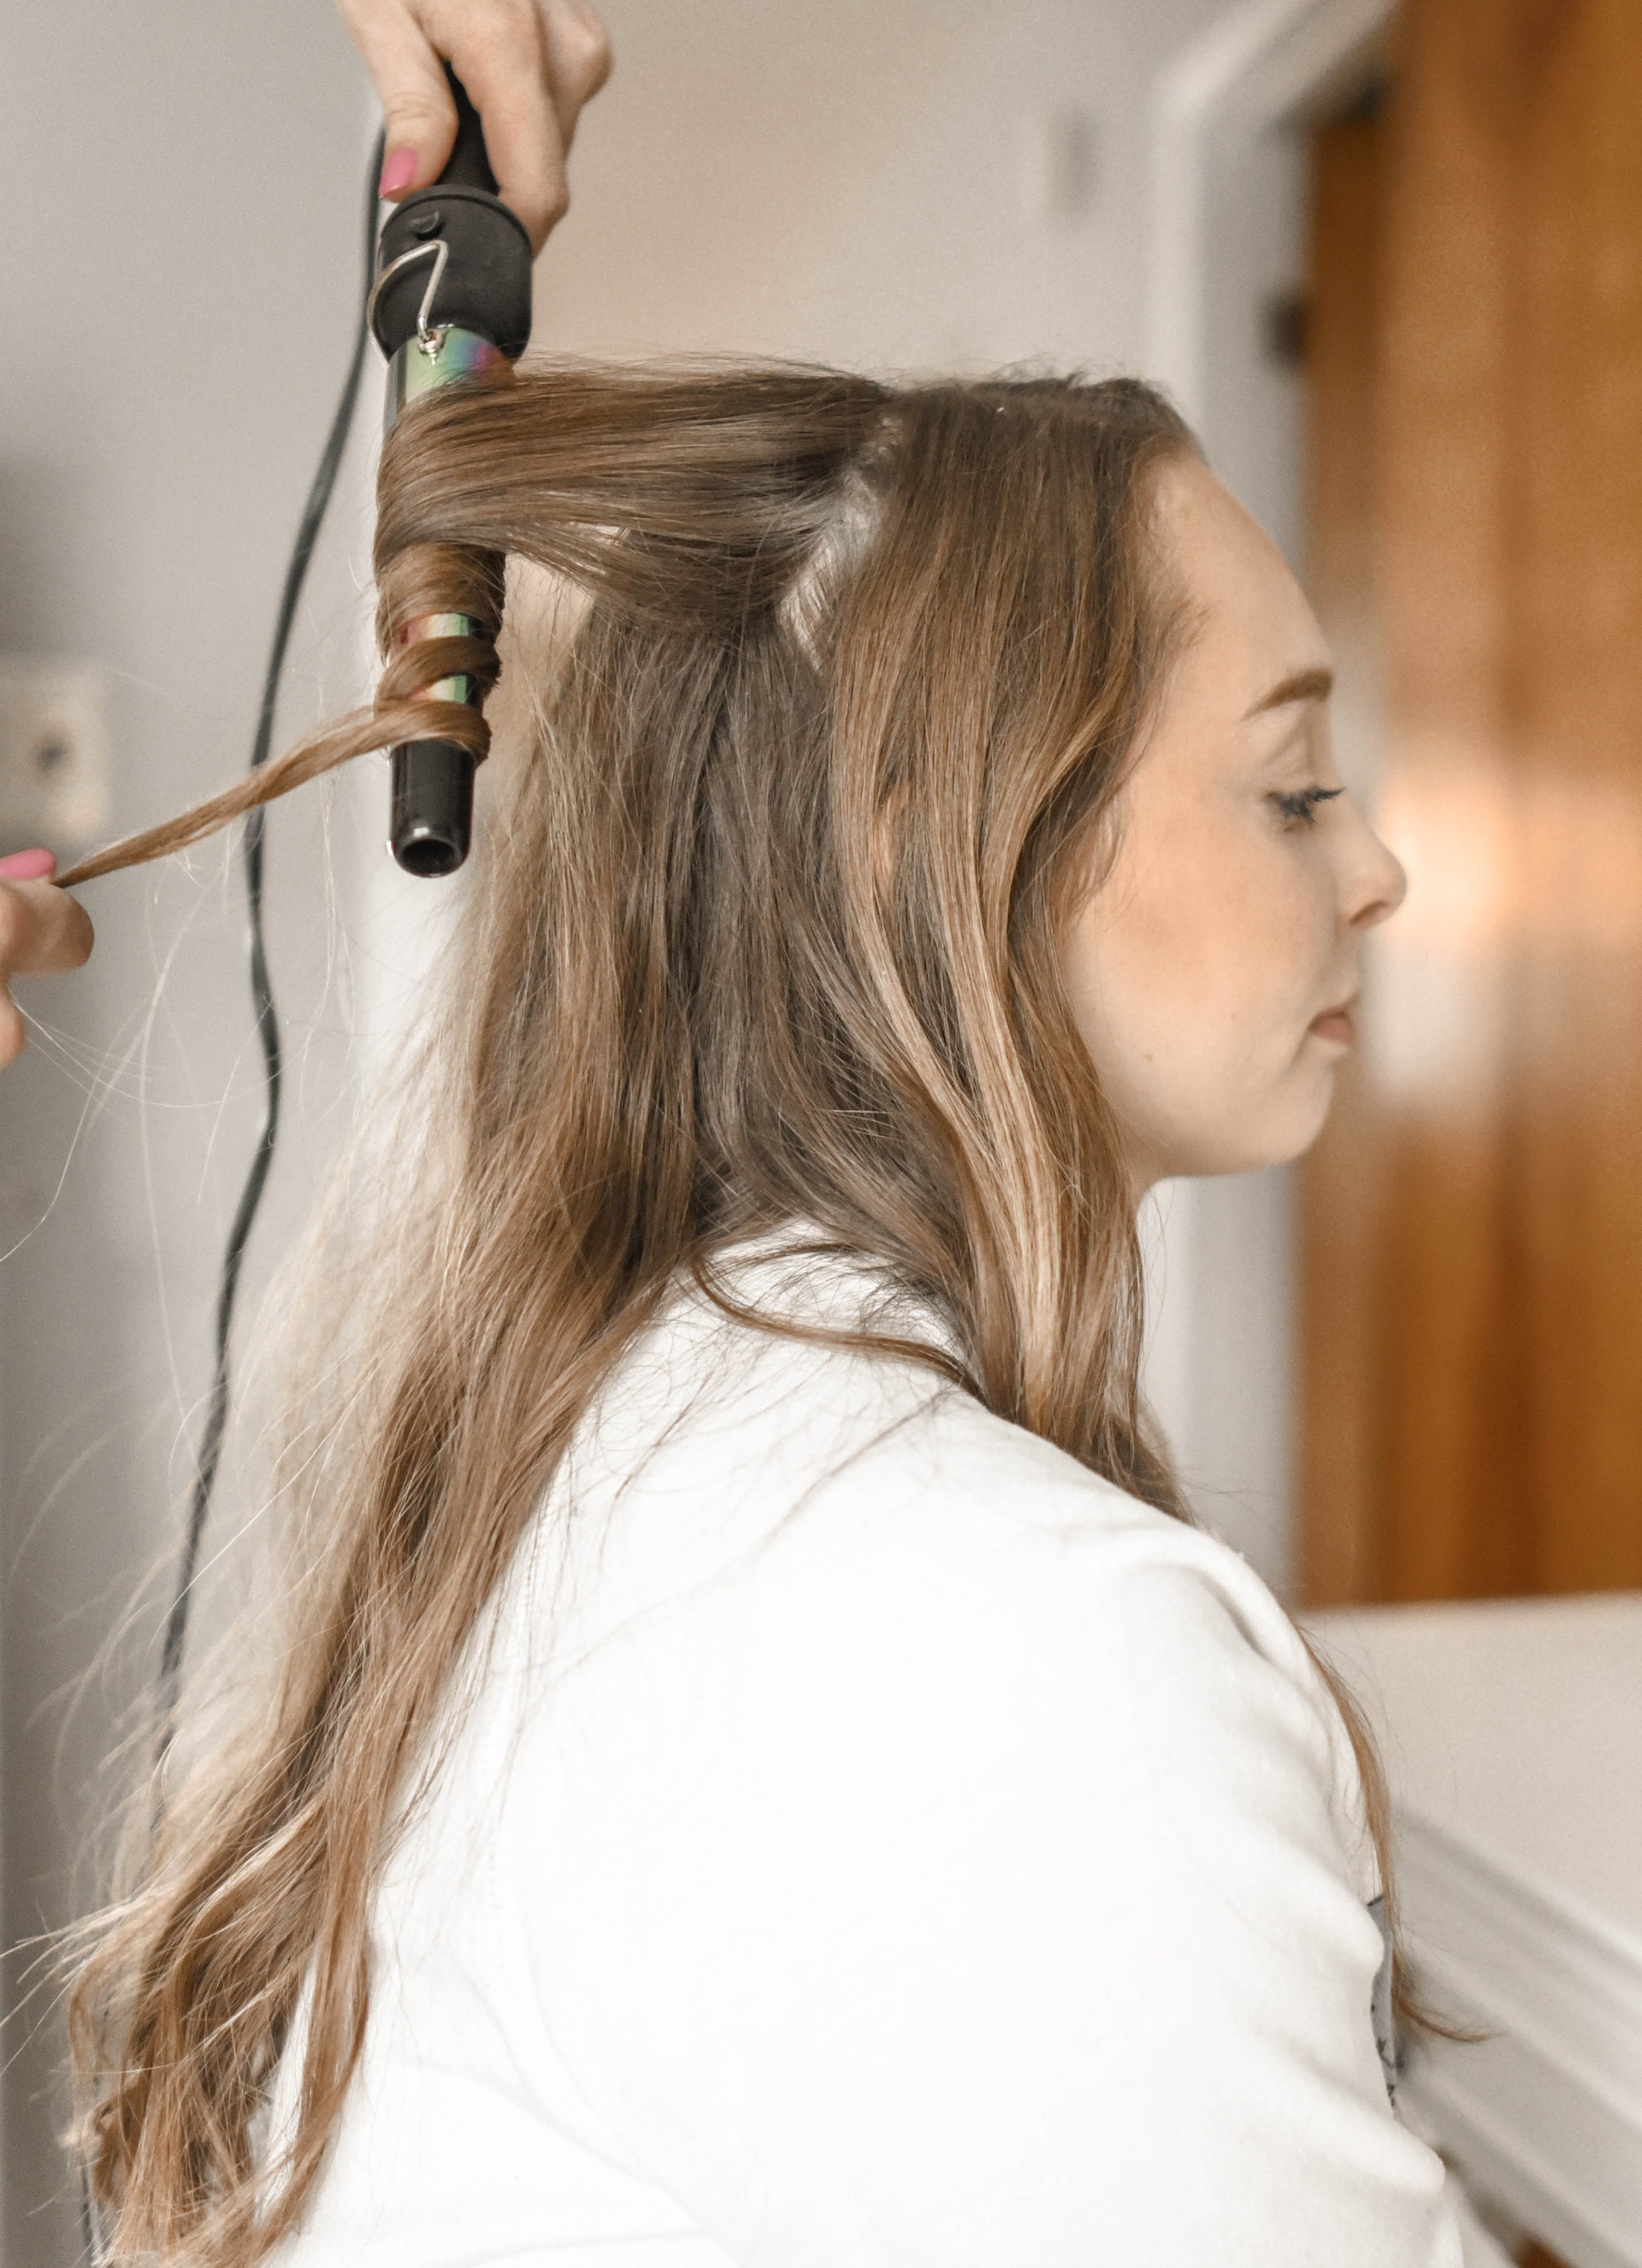 Eine Frau, die ihre Haare locken lässt | Quelle: Pexels